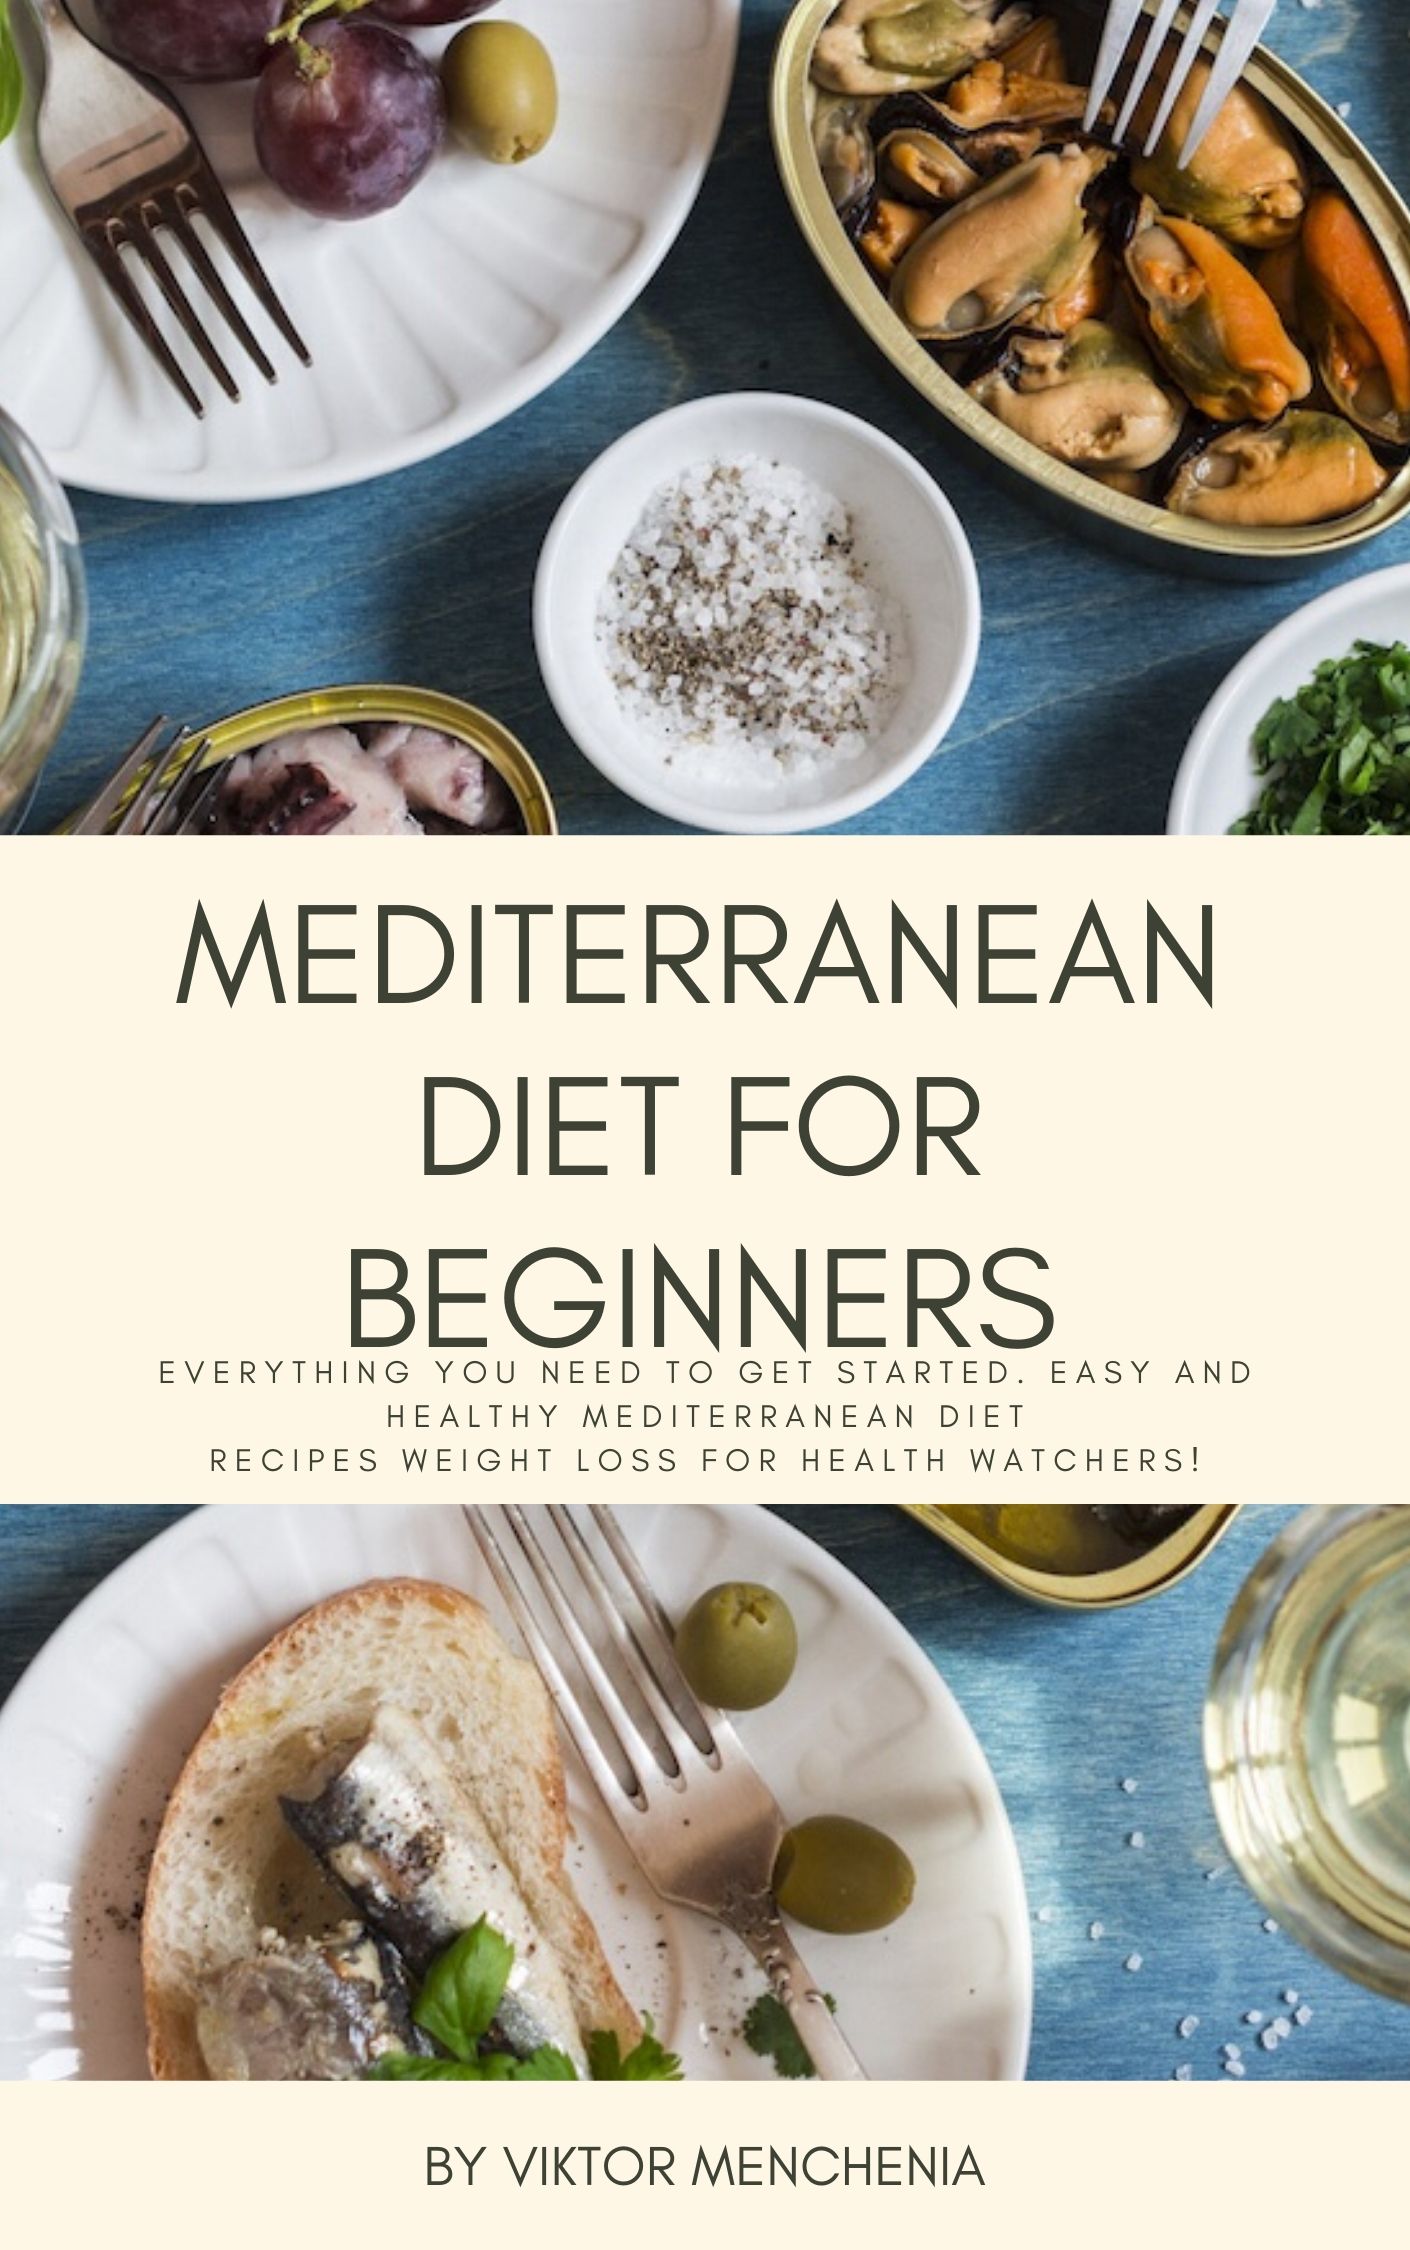 FREE: Mediterranean Diet for Beginners by Viktor Menchenia